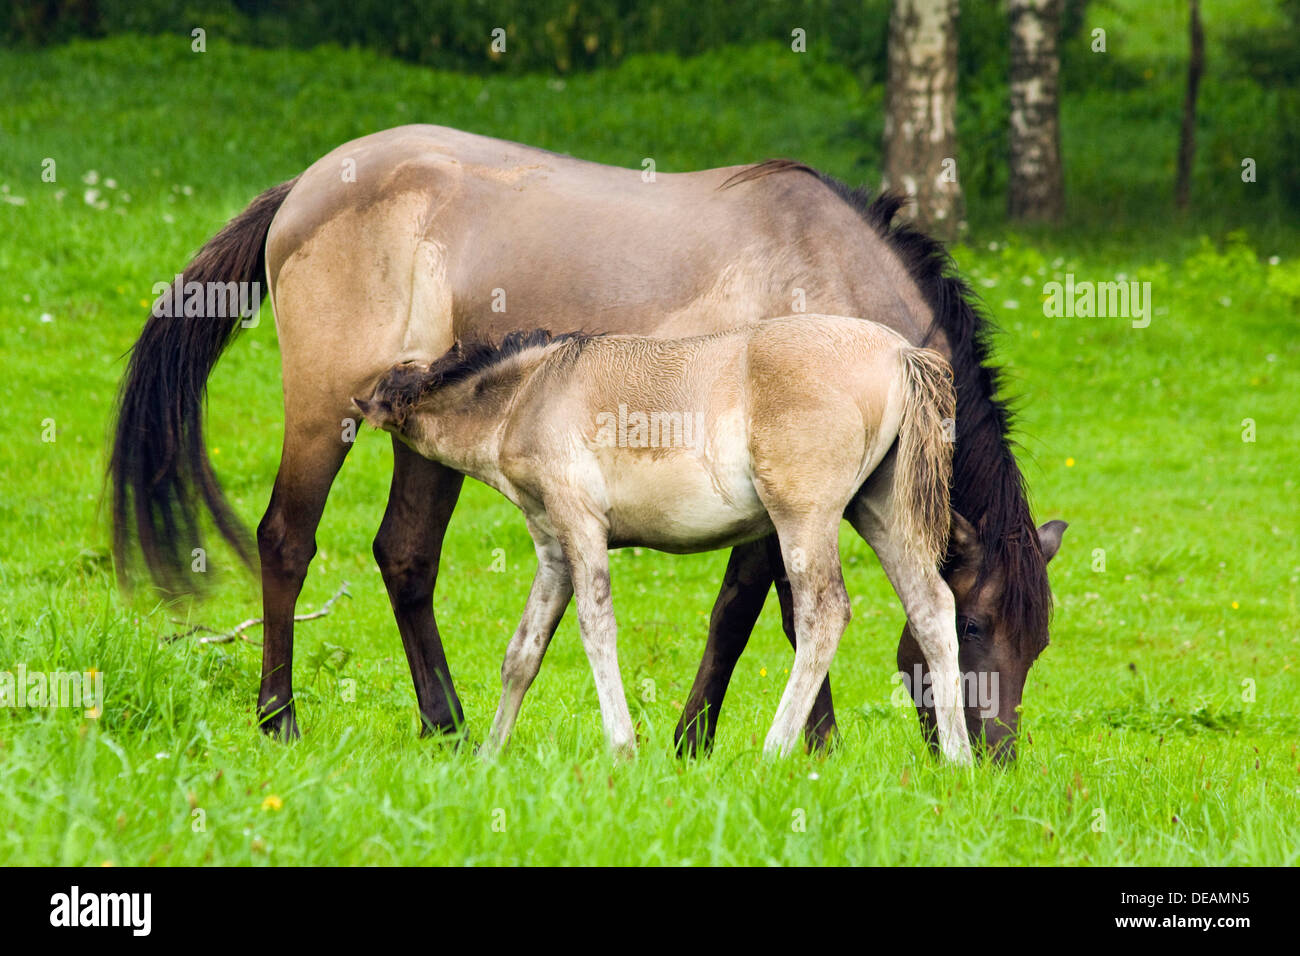 Konik horse (Equus ferus caballus Konik), mare suckling foal Stock Photo